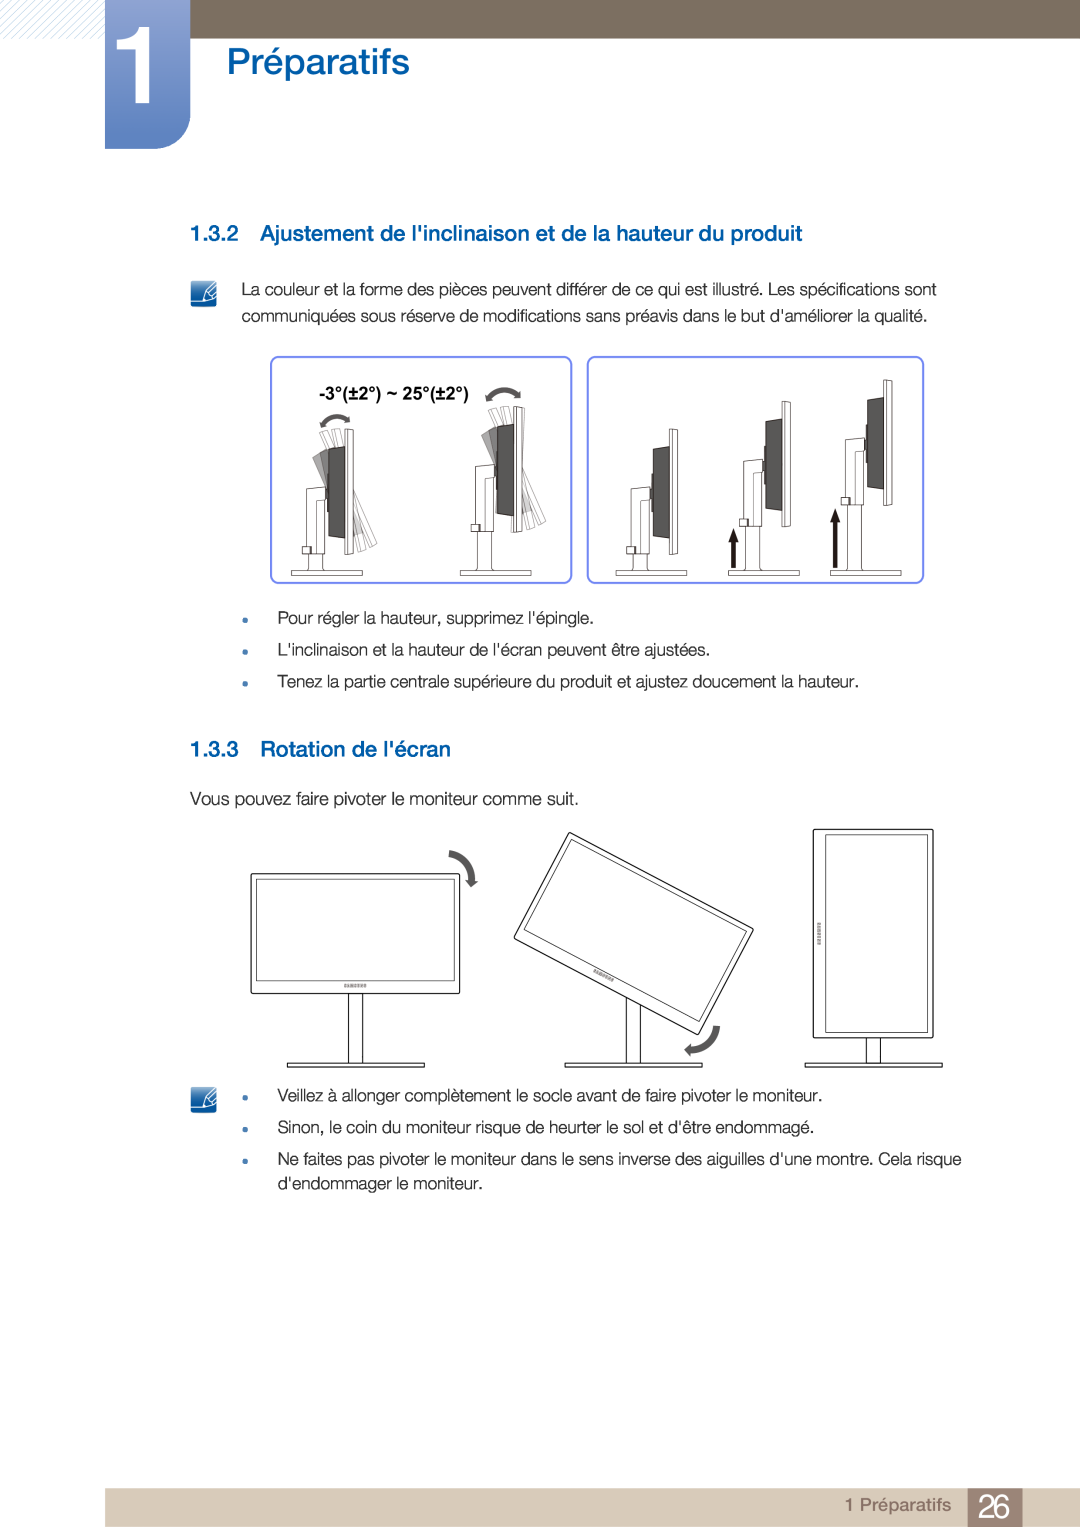 Samsung LF22NTBHBNM/EN manual Ajustement de linclinaison et de la hauteur du produit, Rotation de lécran, 1 Préparatifs 